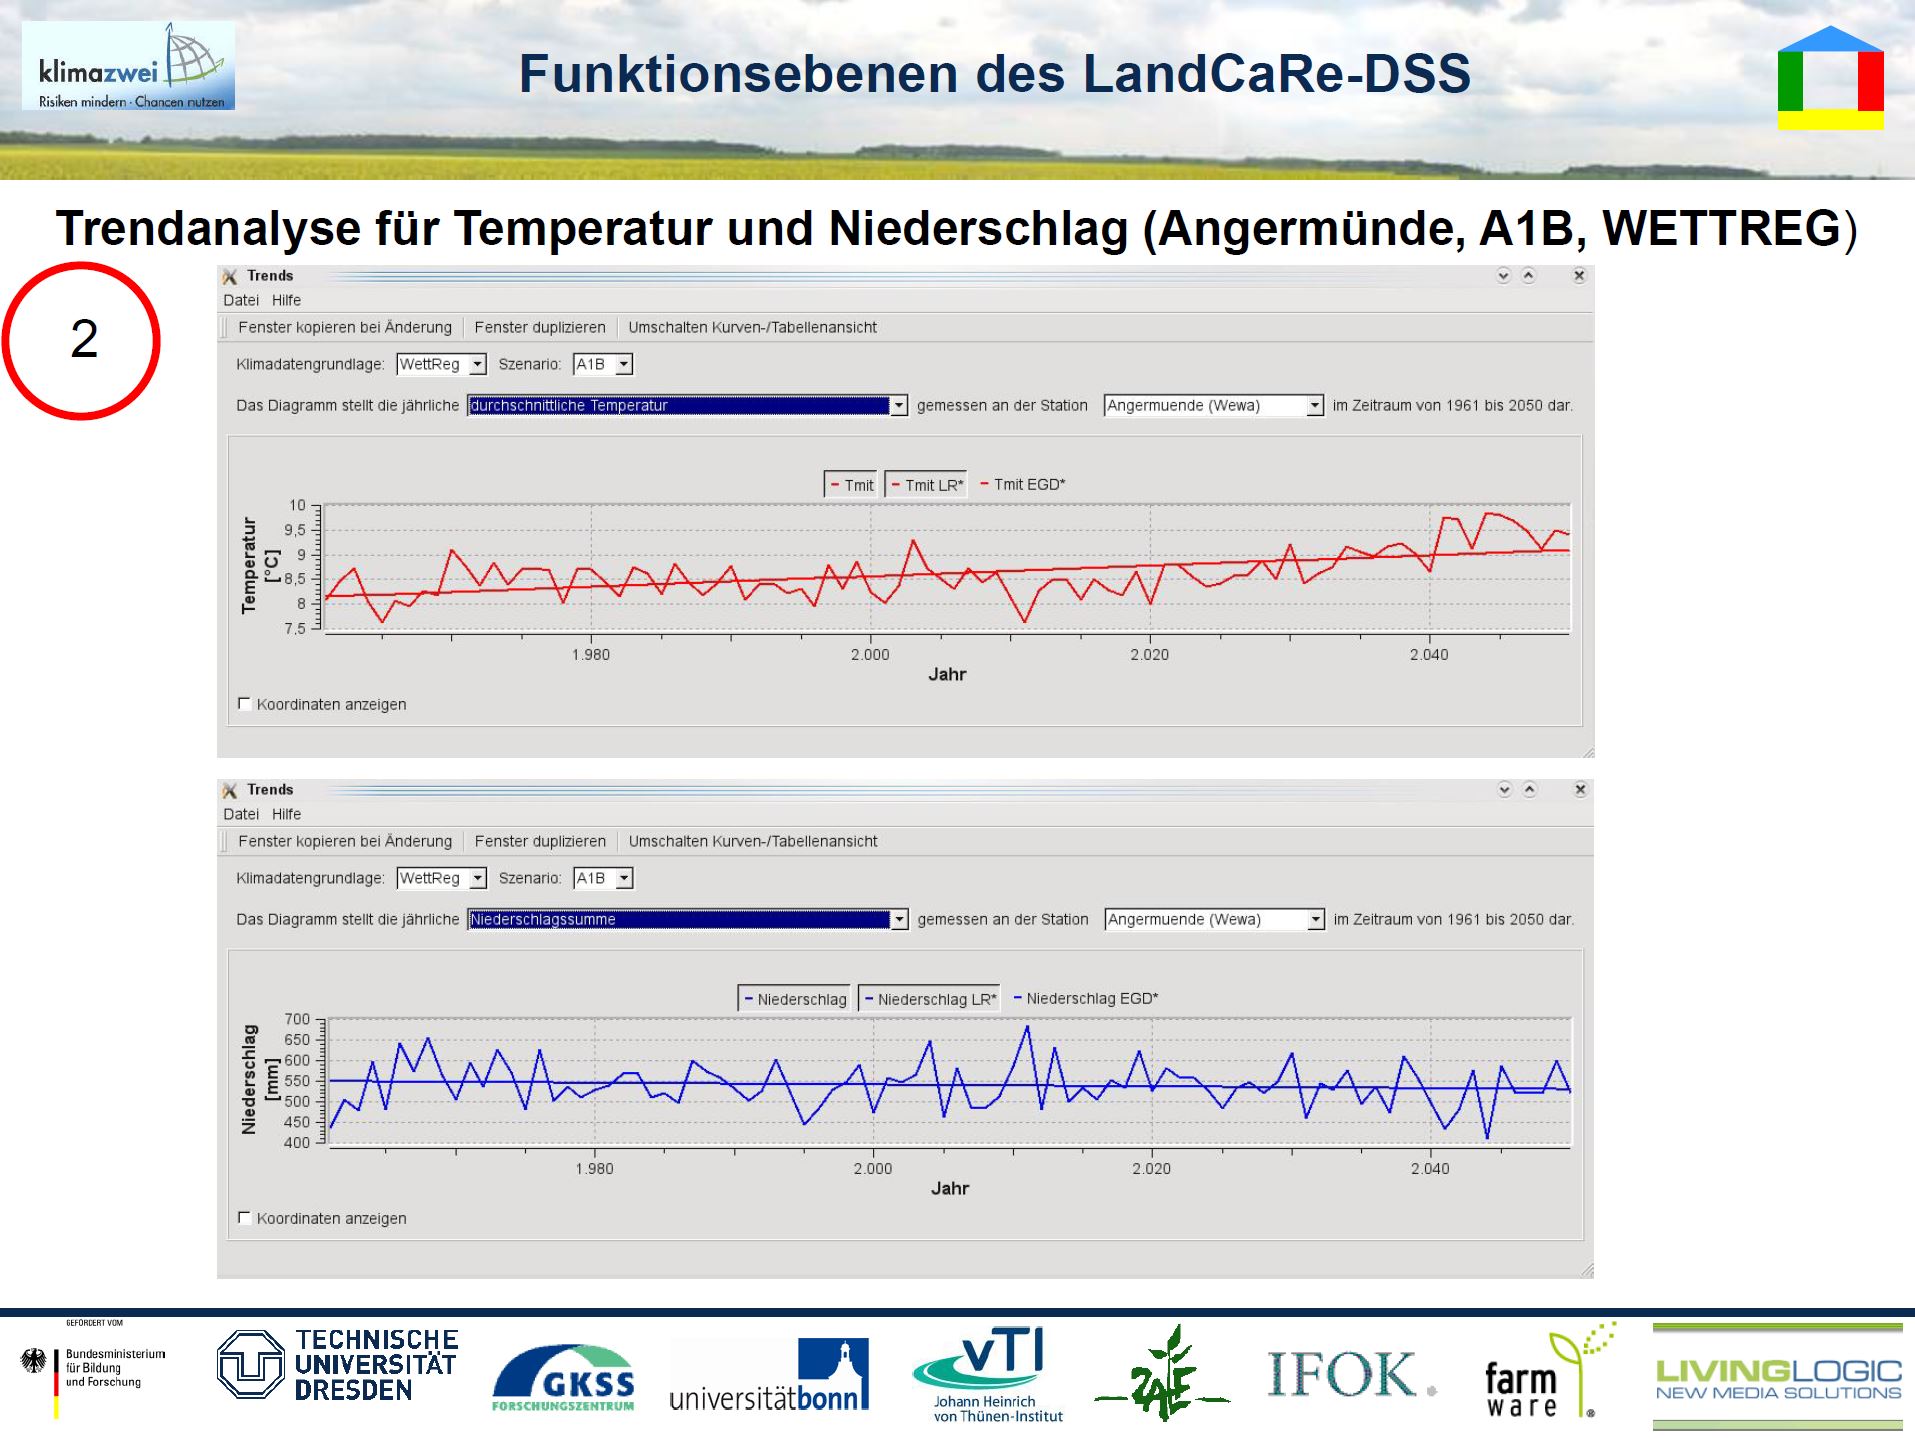 19/33 - LandCaRe-DSS - Funktionsebenen - Trendanalyse für Temperatur und Niederschlag